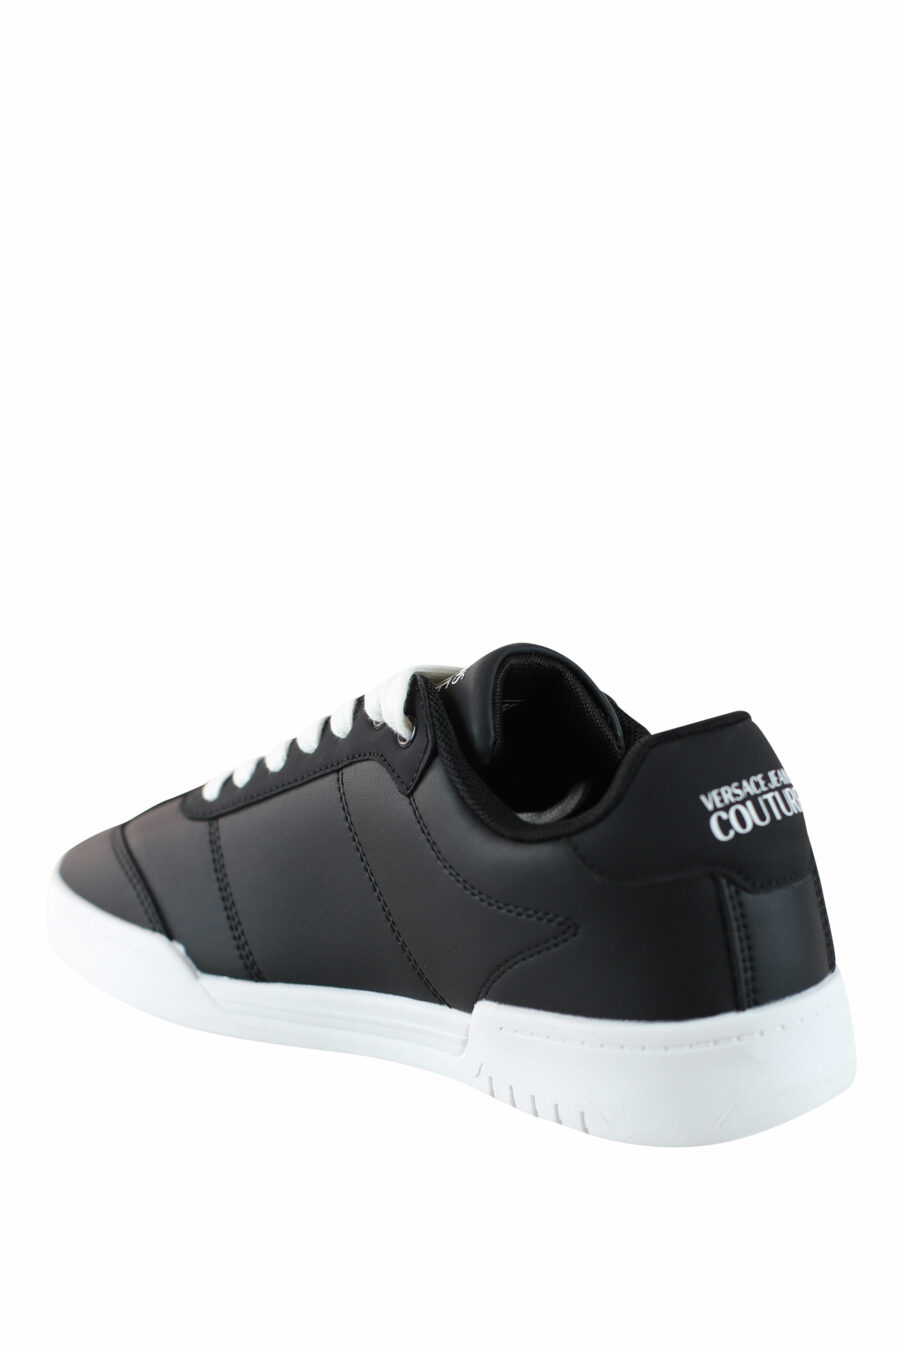 Zapatillas negras con logo circular y cordones blancos - IMG 4512